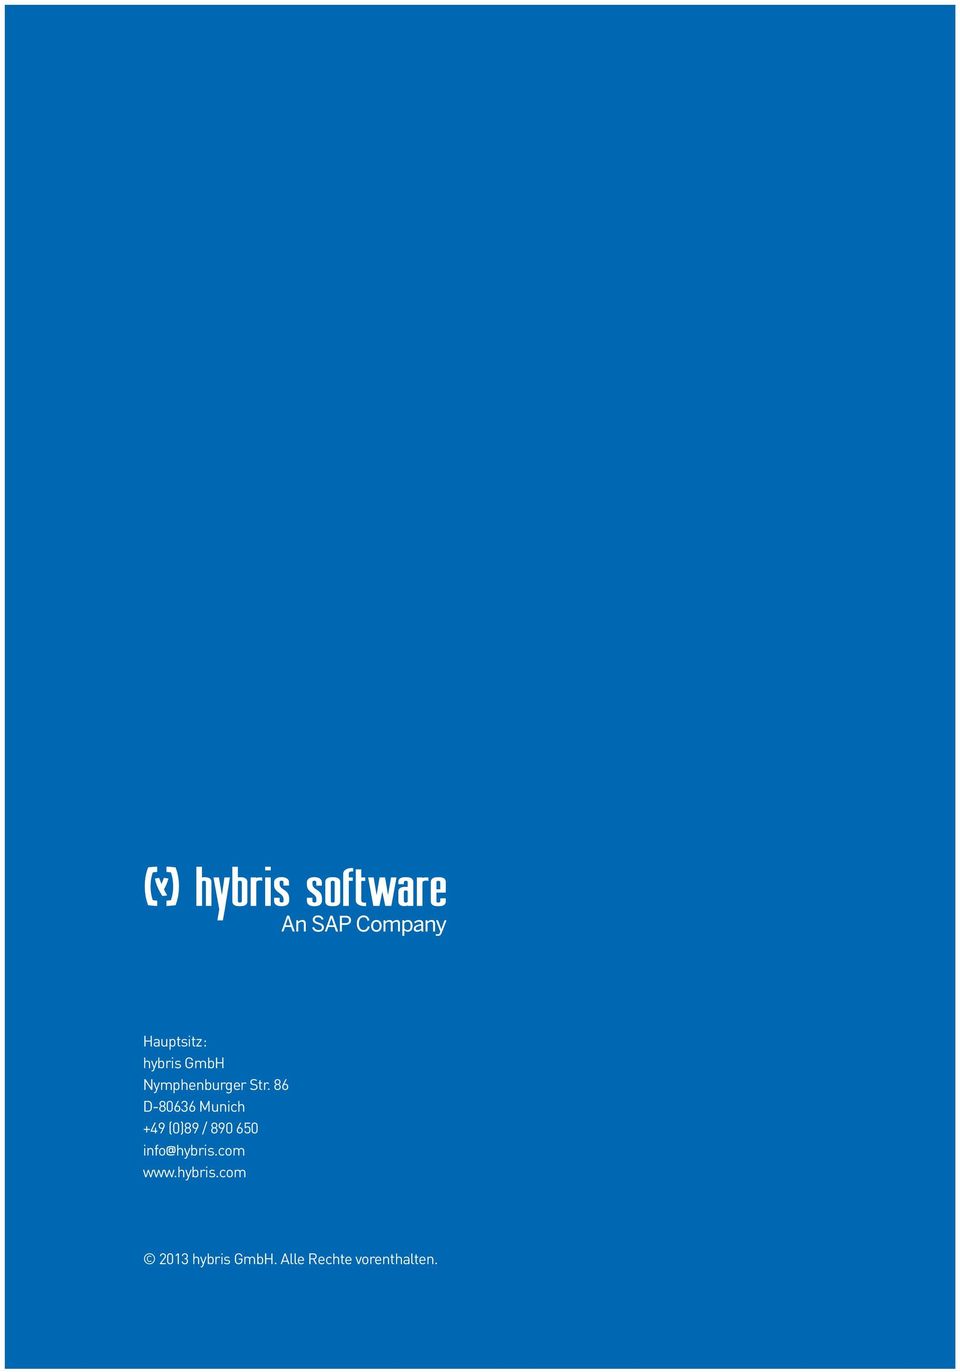 650 info@hybris.com www.hybris.com 2013 hybris GmbH.